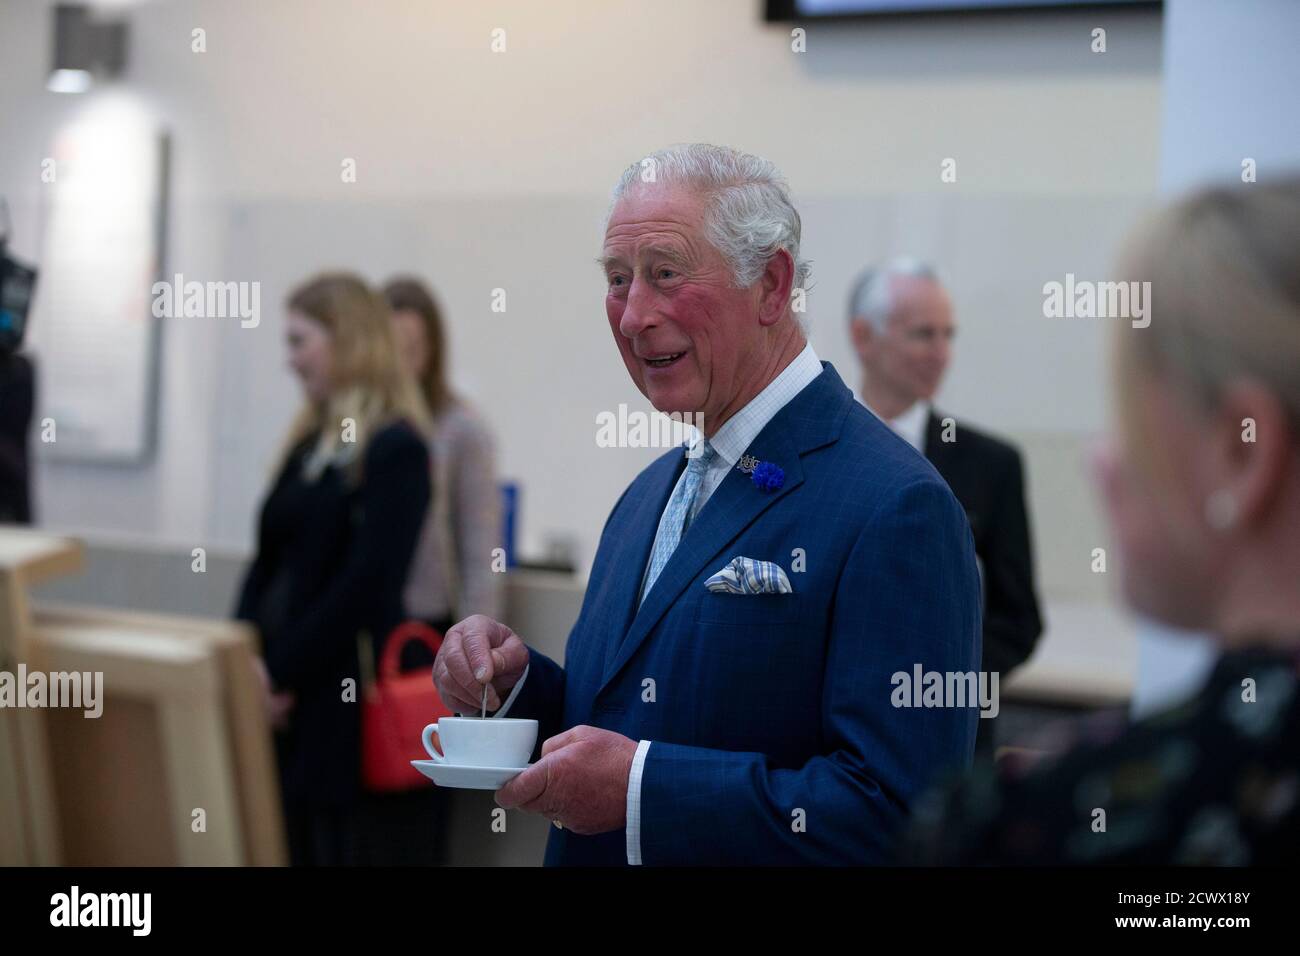 Der Prinz von Wales bei einem Besuch im Ulster Museum in Belfast, wo er mit Museumsangestellten zusammentraf, während der Tourismus- und Kultursektor wegen der Coronavirus-Pandemie wieder eröffnet wird und in den kommenden Monaten auf eine Erholung zukommt. Stockfoto